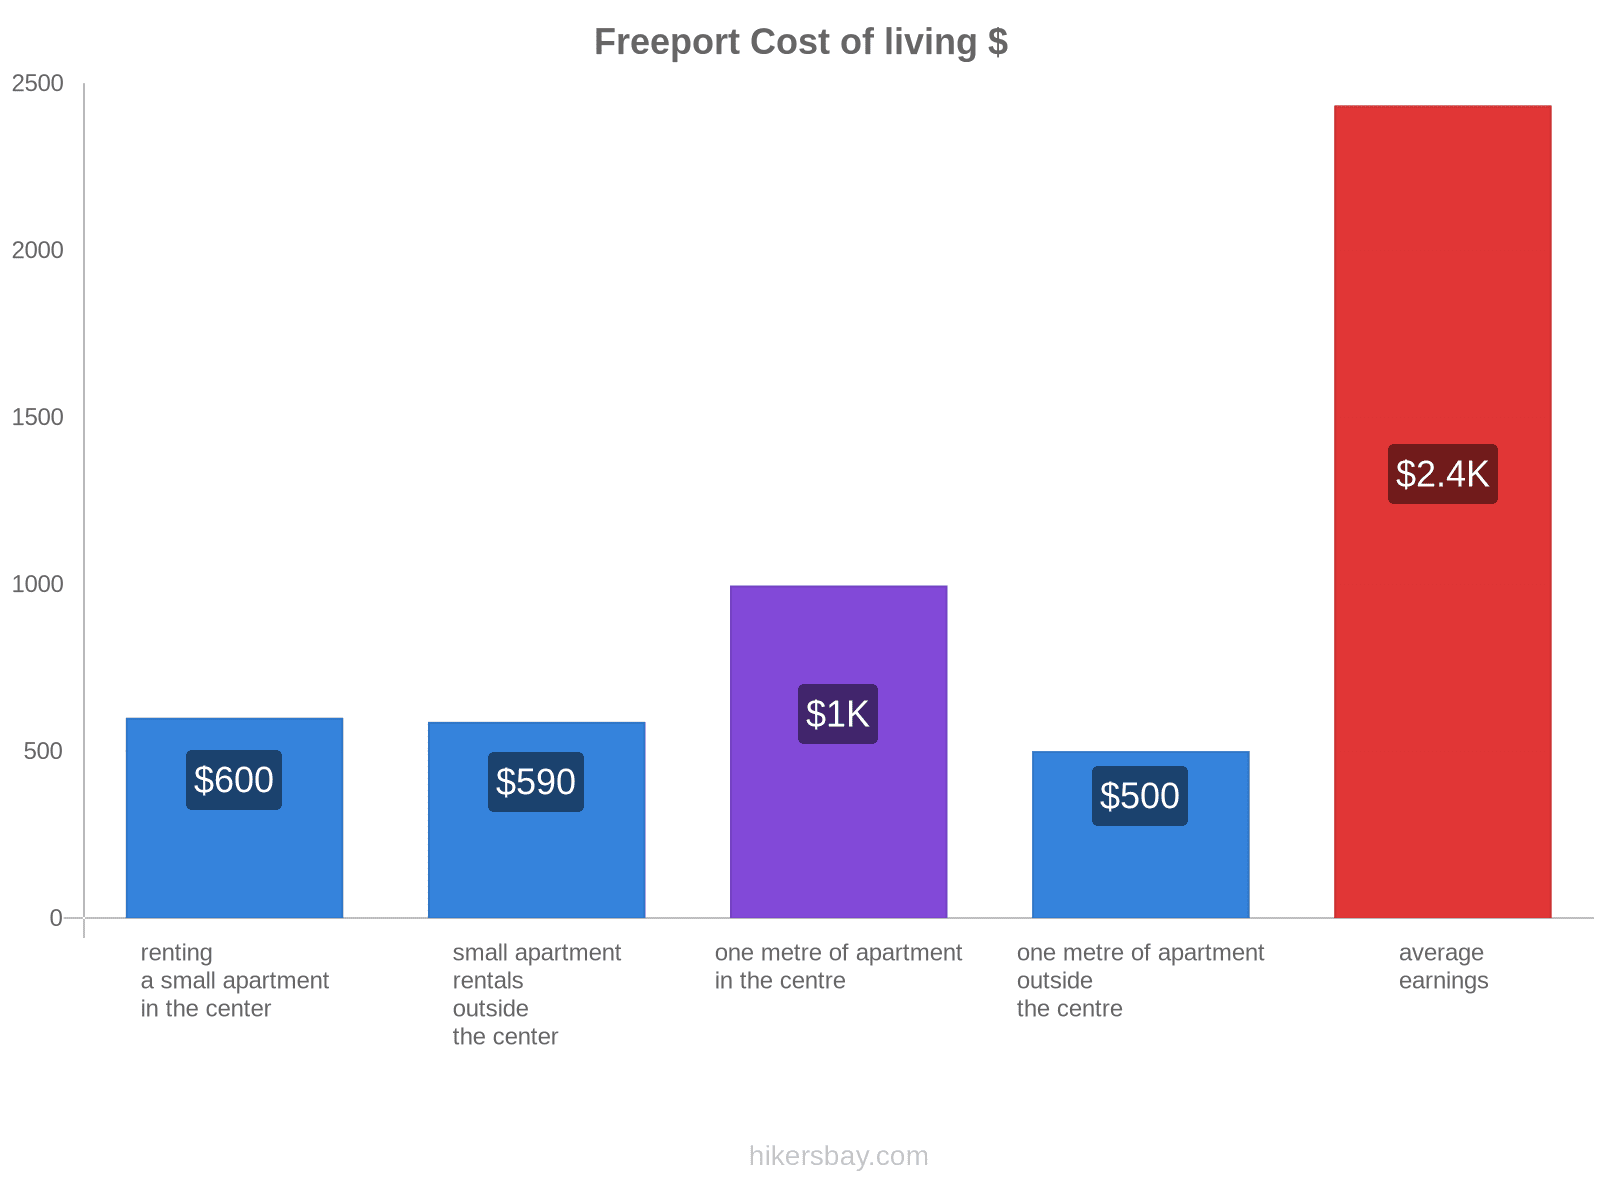 Freeport cost of living hikersbay.com